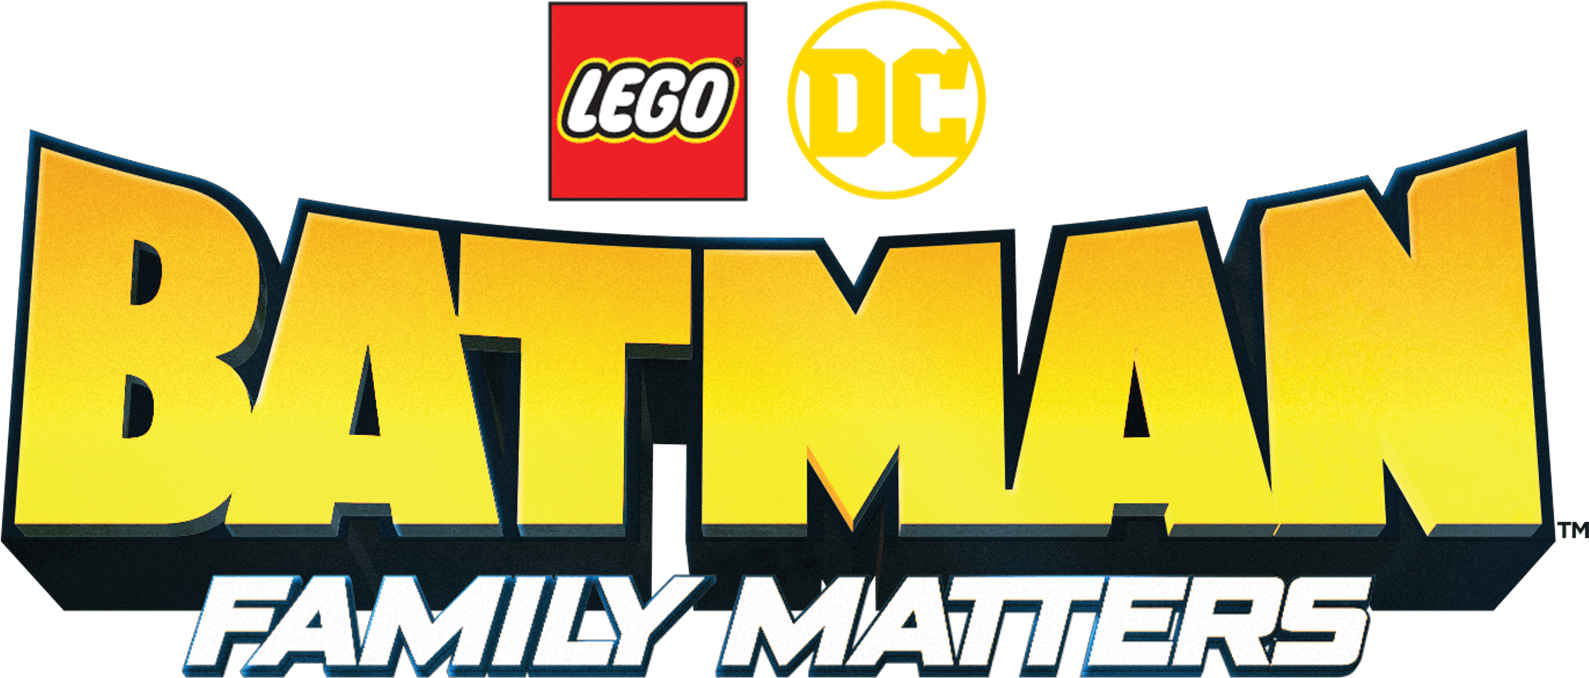 Lego DC Batman: Family Matters logo